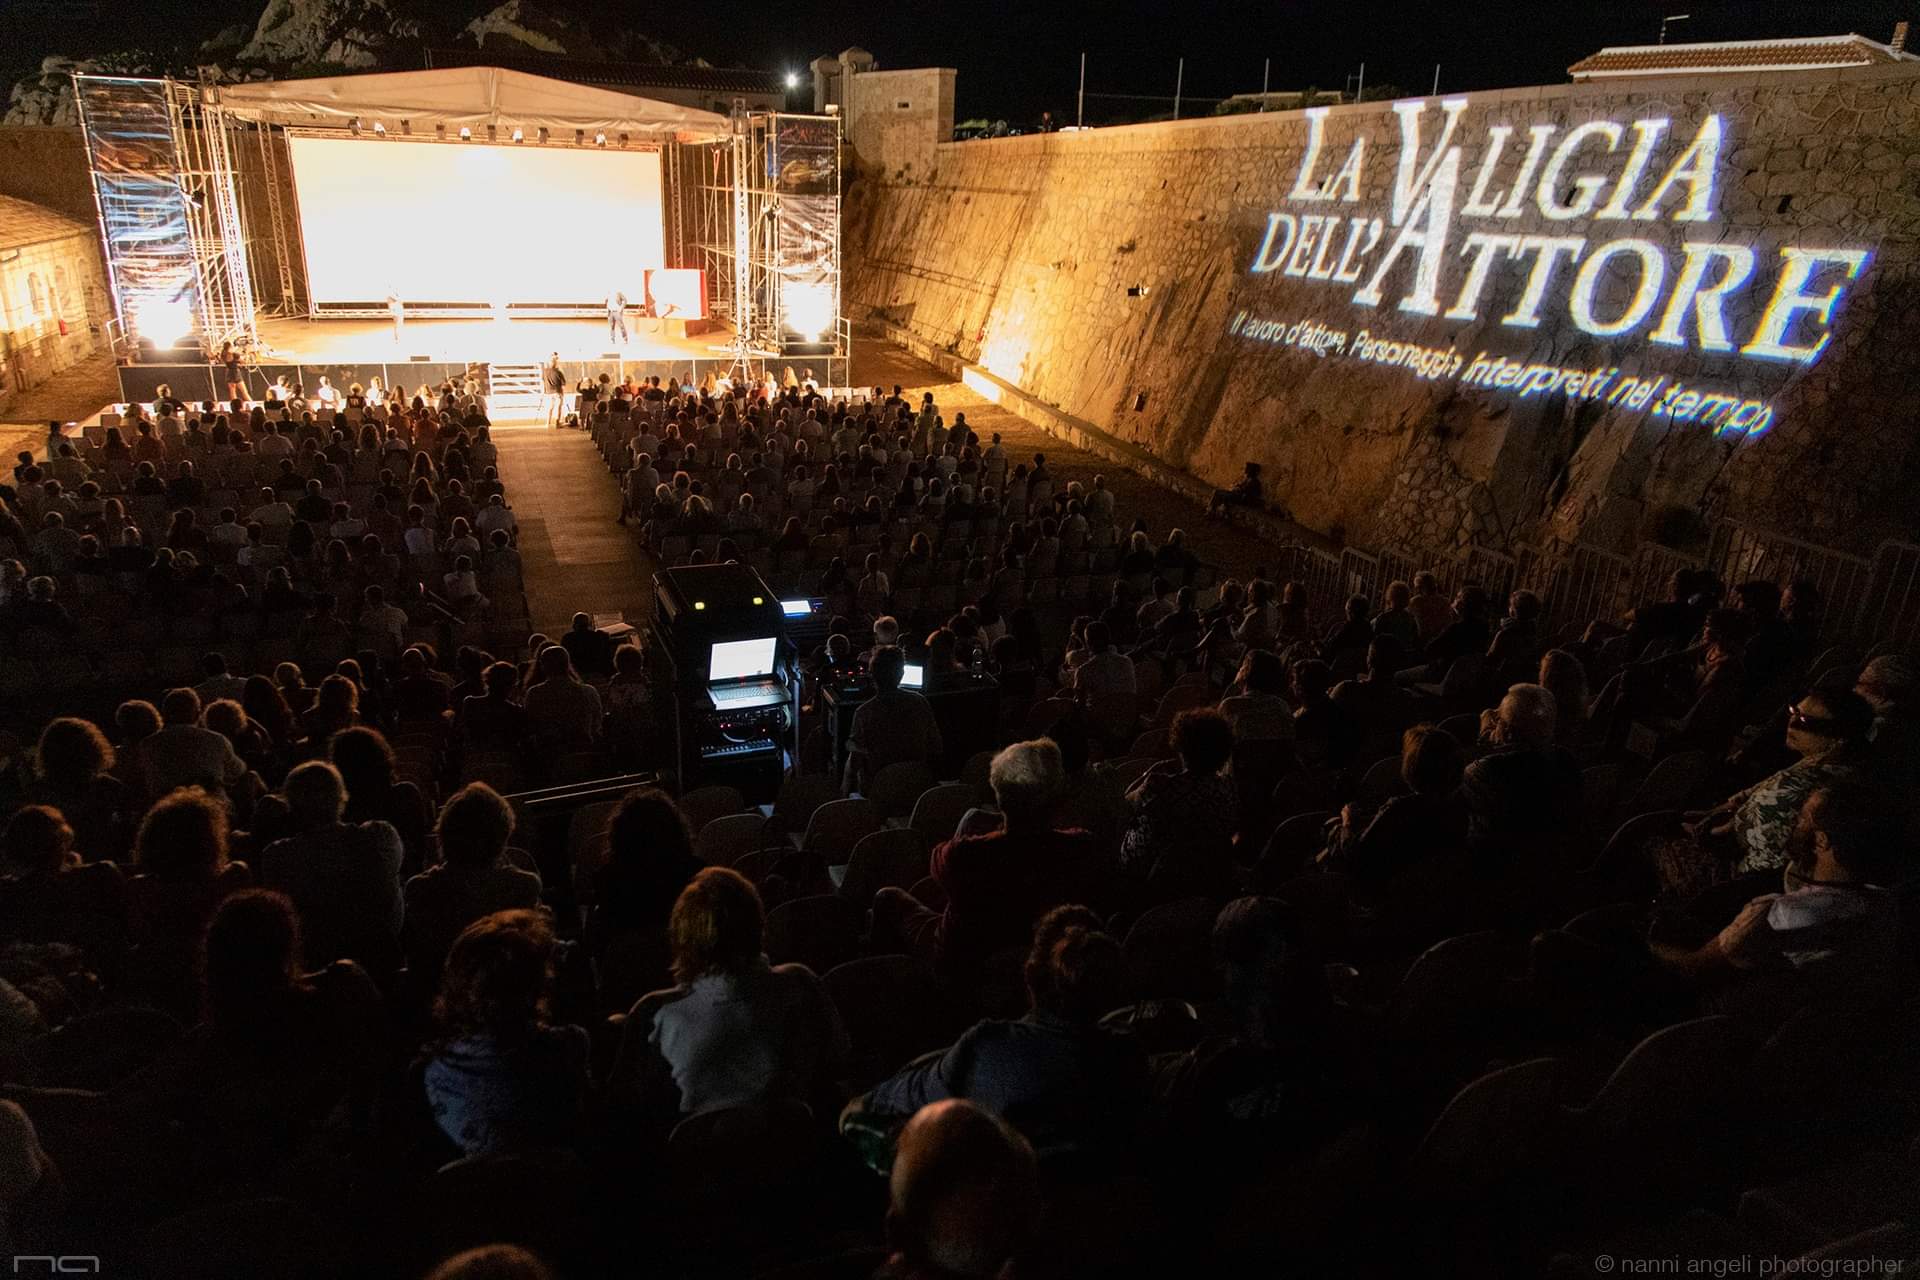 Sardinien: Kleine Inseln, großes Kino